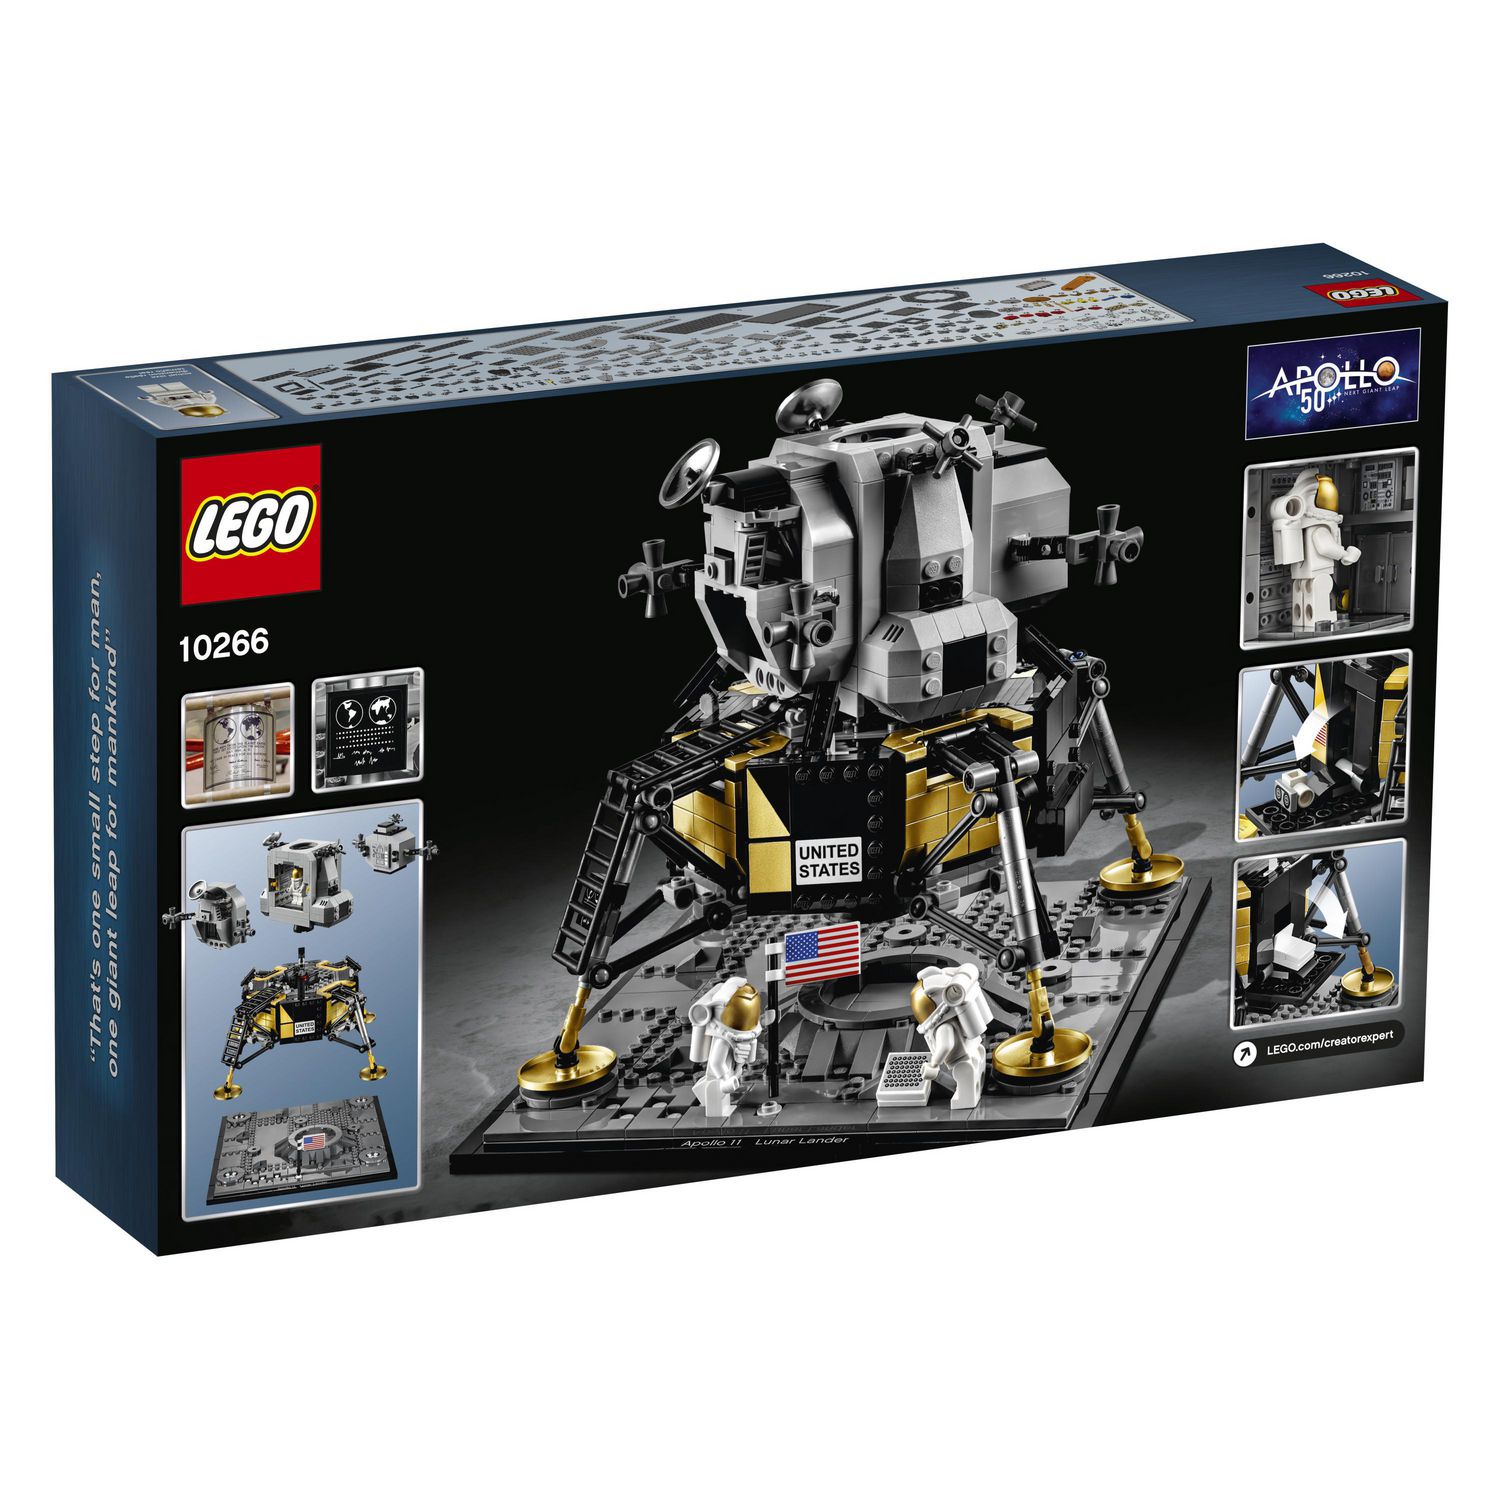 LEGO Creator Expert NASA Apollo 11 Lunar Lander 10266 Toy Building